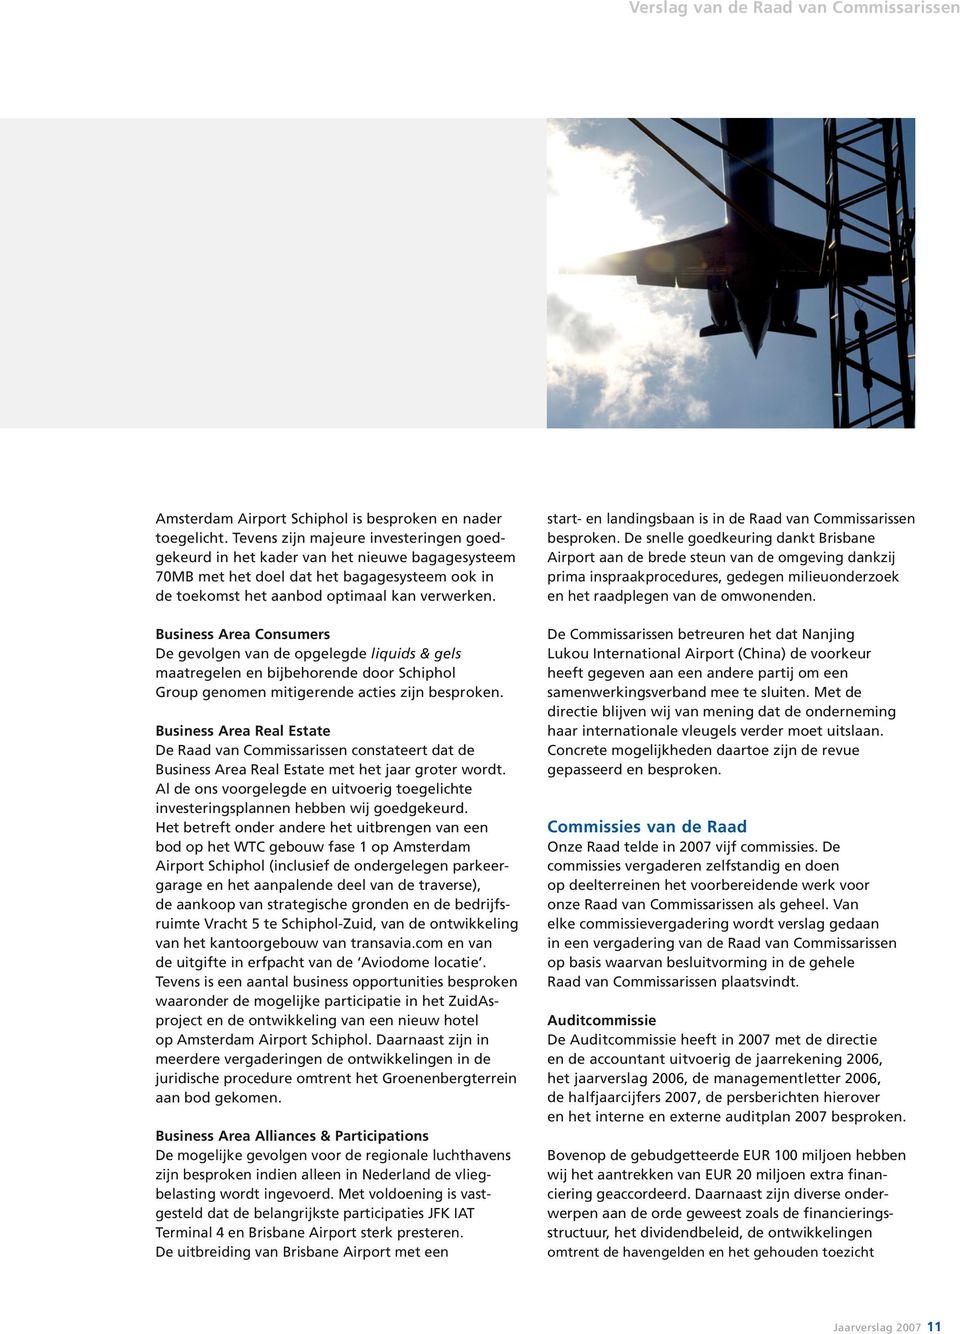 Business Area Consumers De gevolgen van de opgelegde liquids & gels maat regelen en bijbehorende door Schiphol Group genomen mitigerende acties zijn besproken.